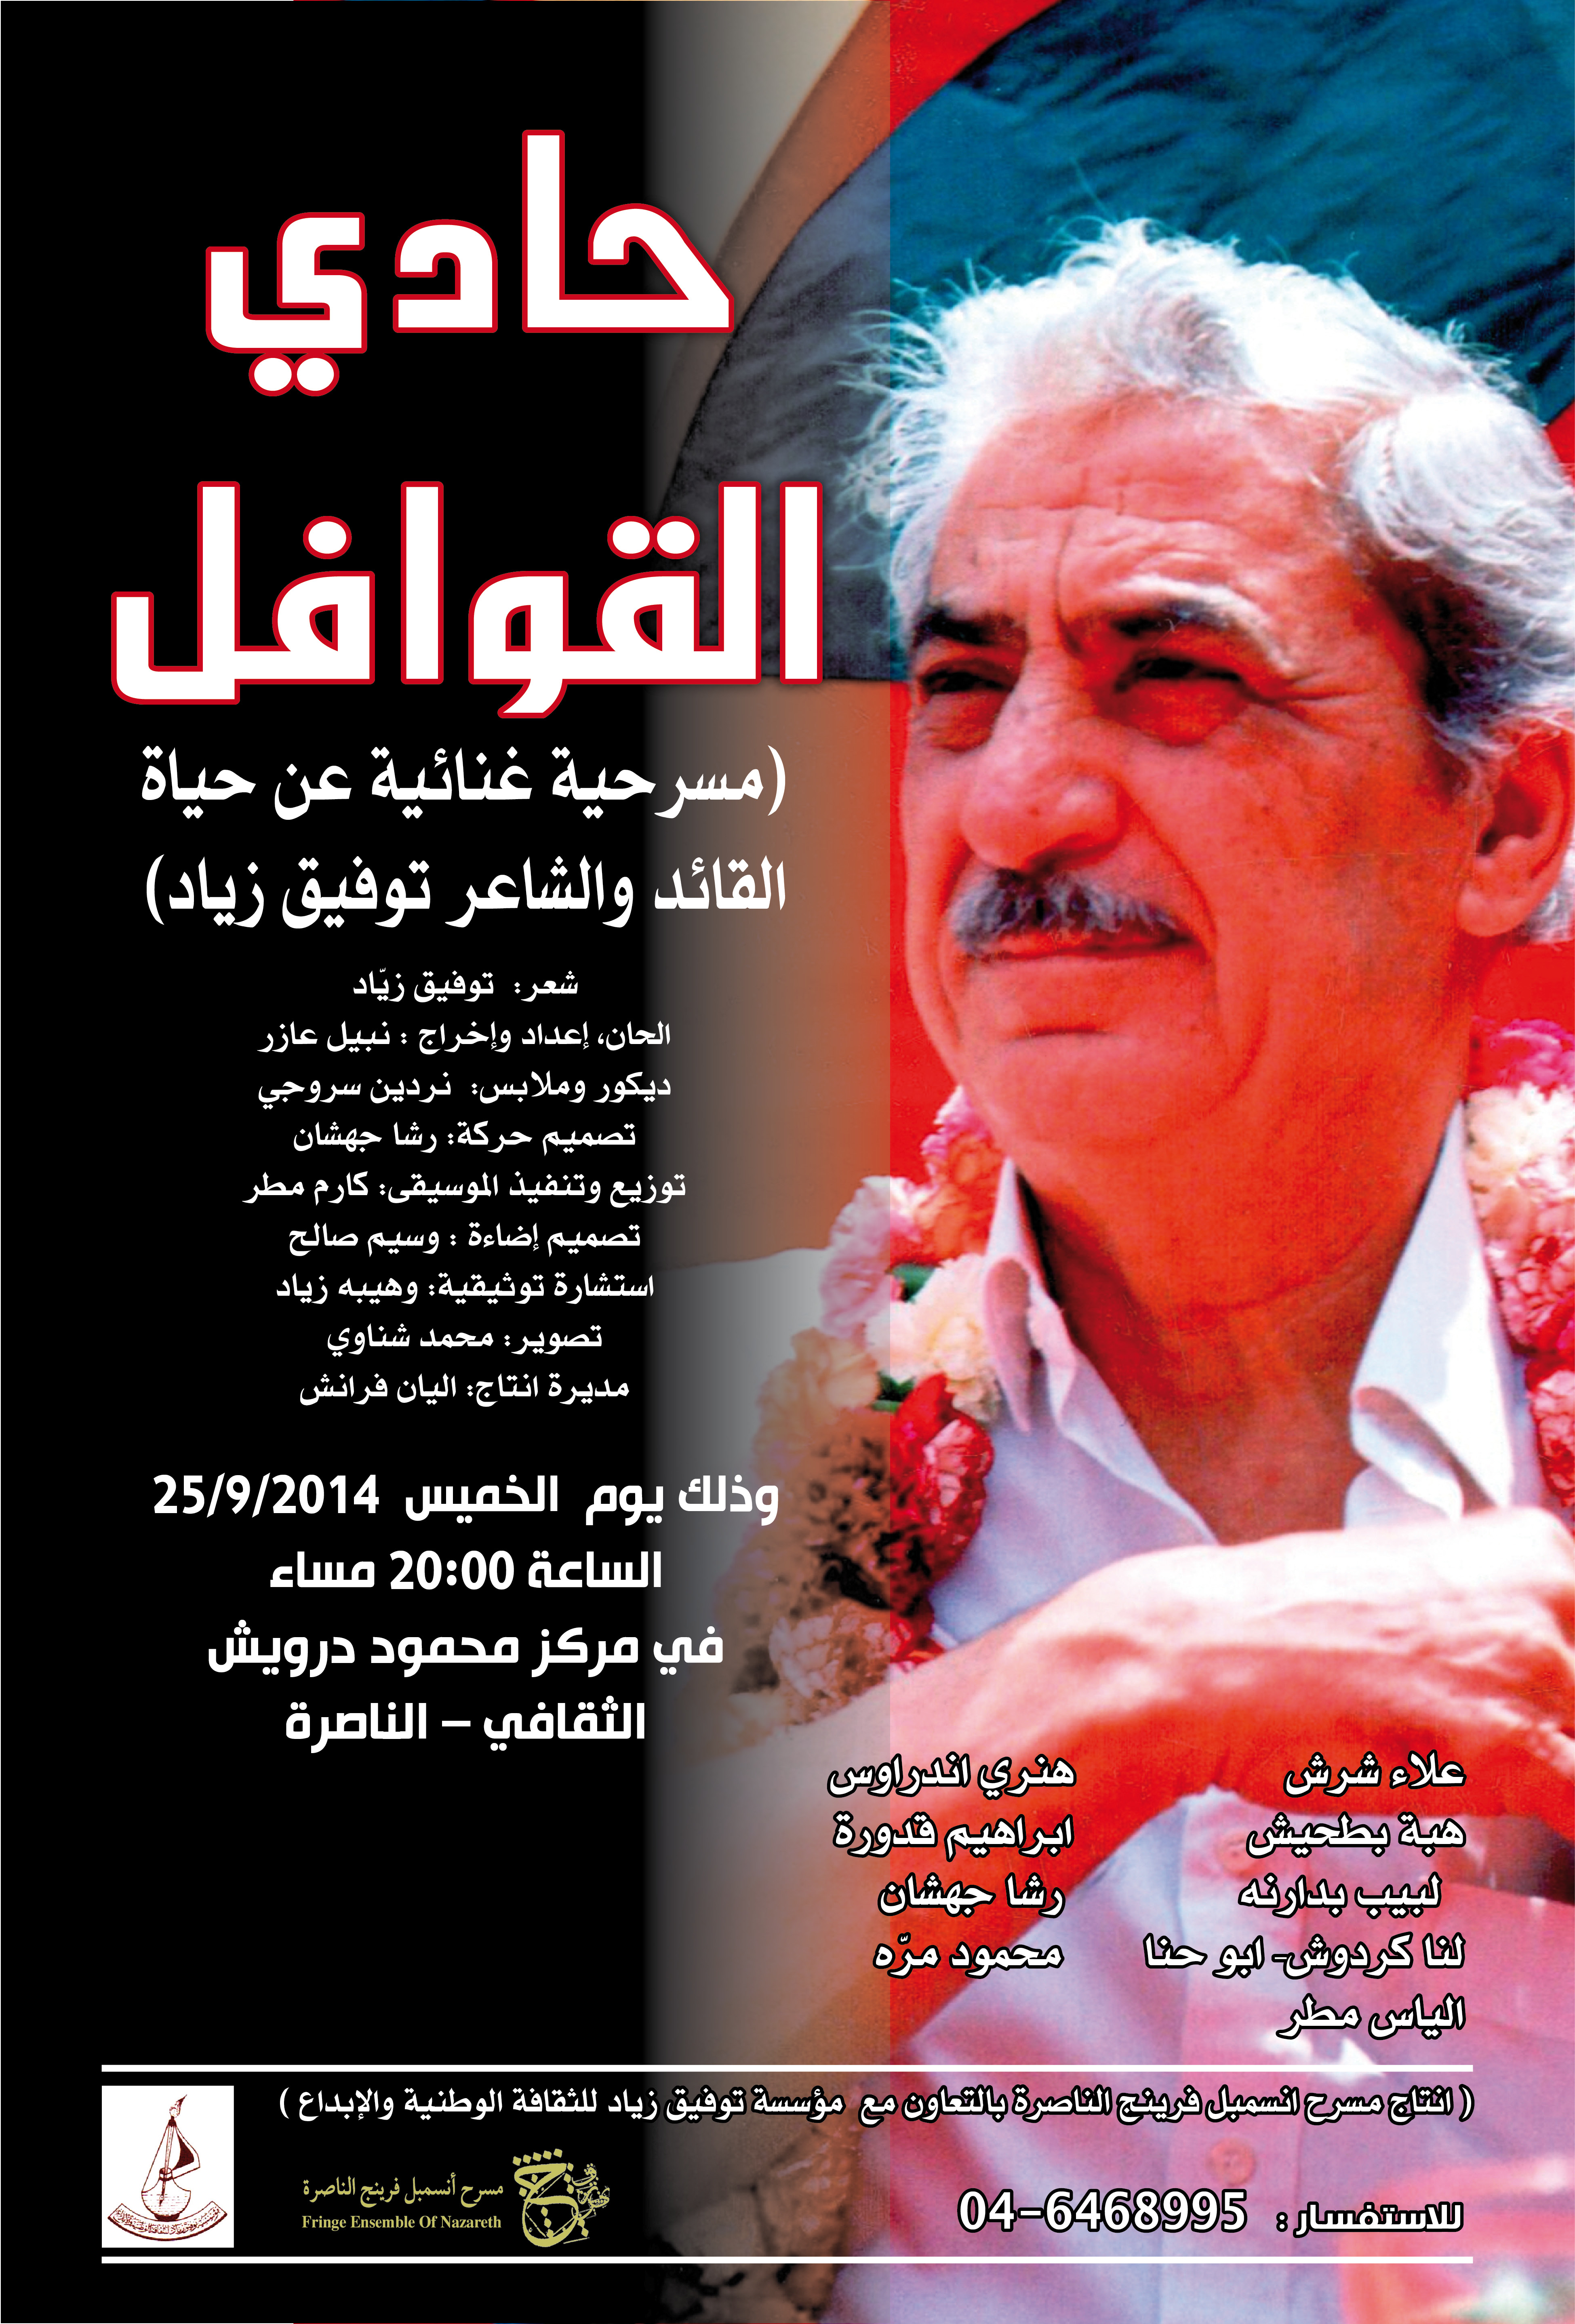 يوم الخميس في الناصرة: حادي القوافل - مسرحيّة غنائيّة عن حياة القائد والشاعر توفيق زيّاد